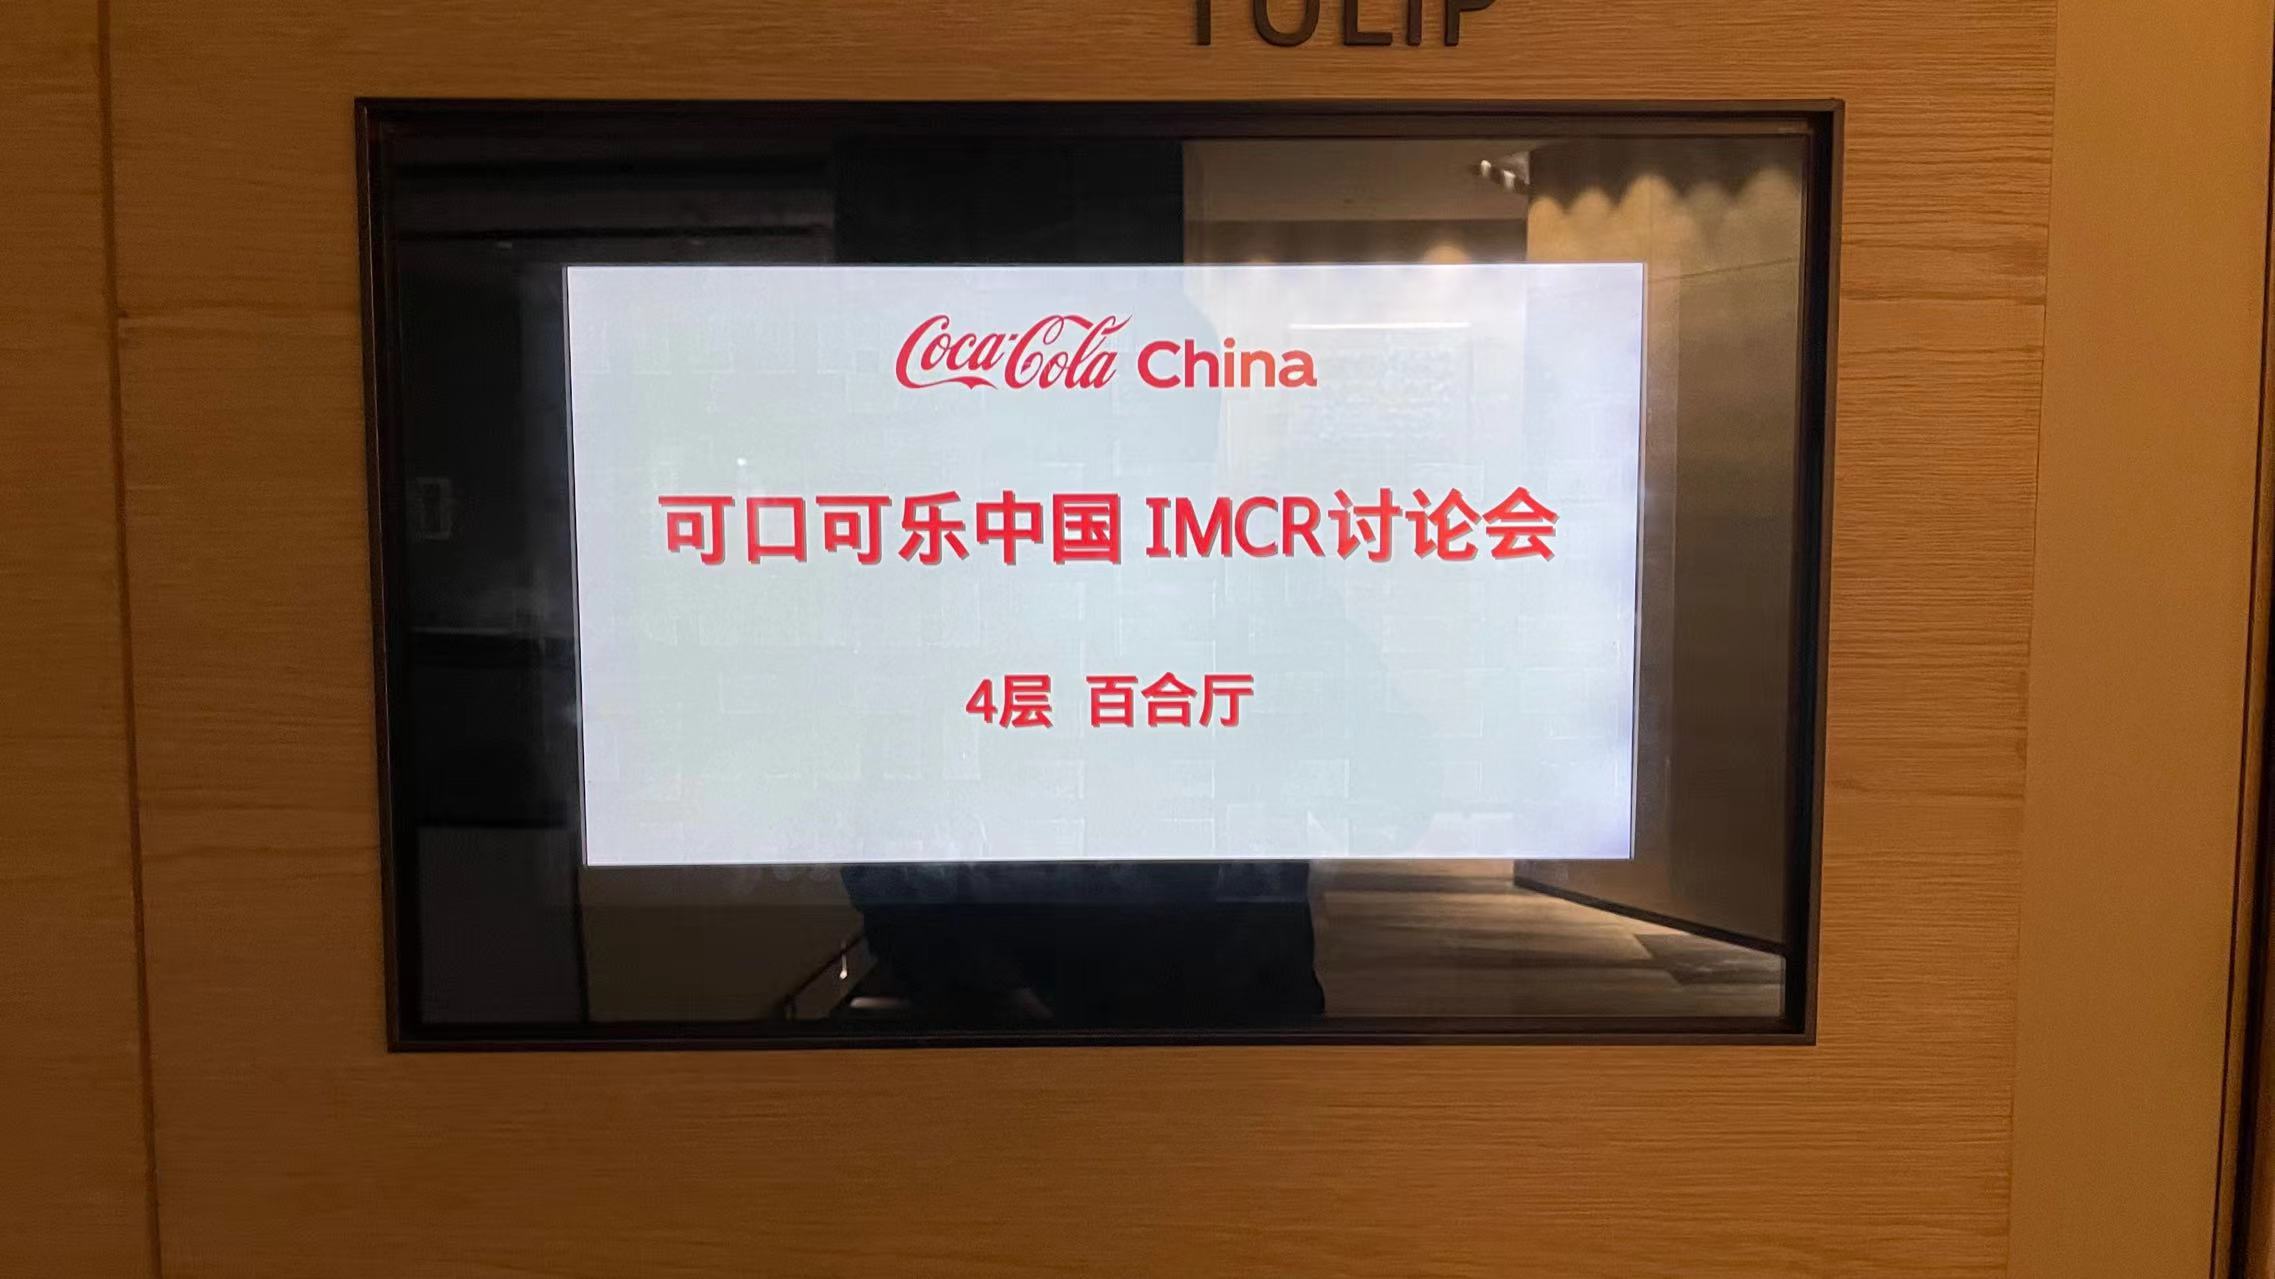 可口可乐中国IMCR讨论会使用东央直播